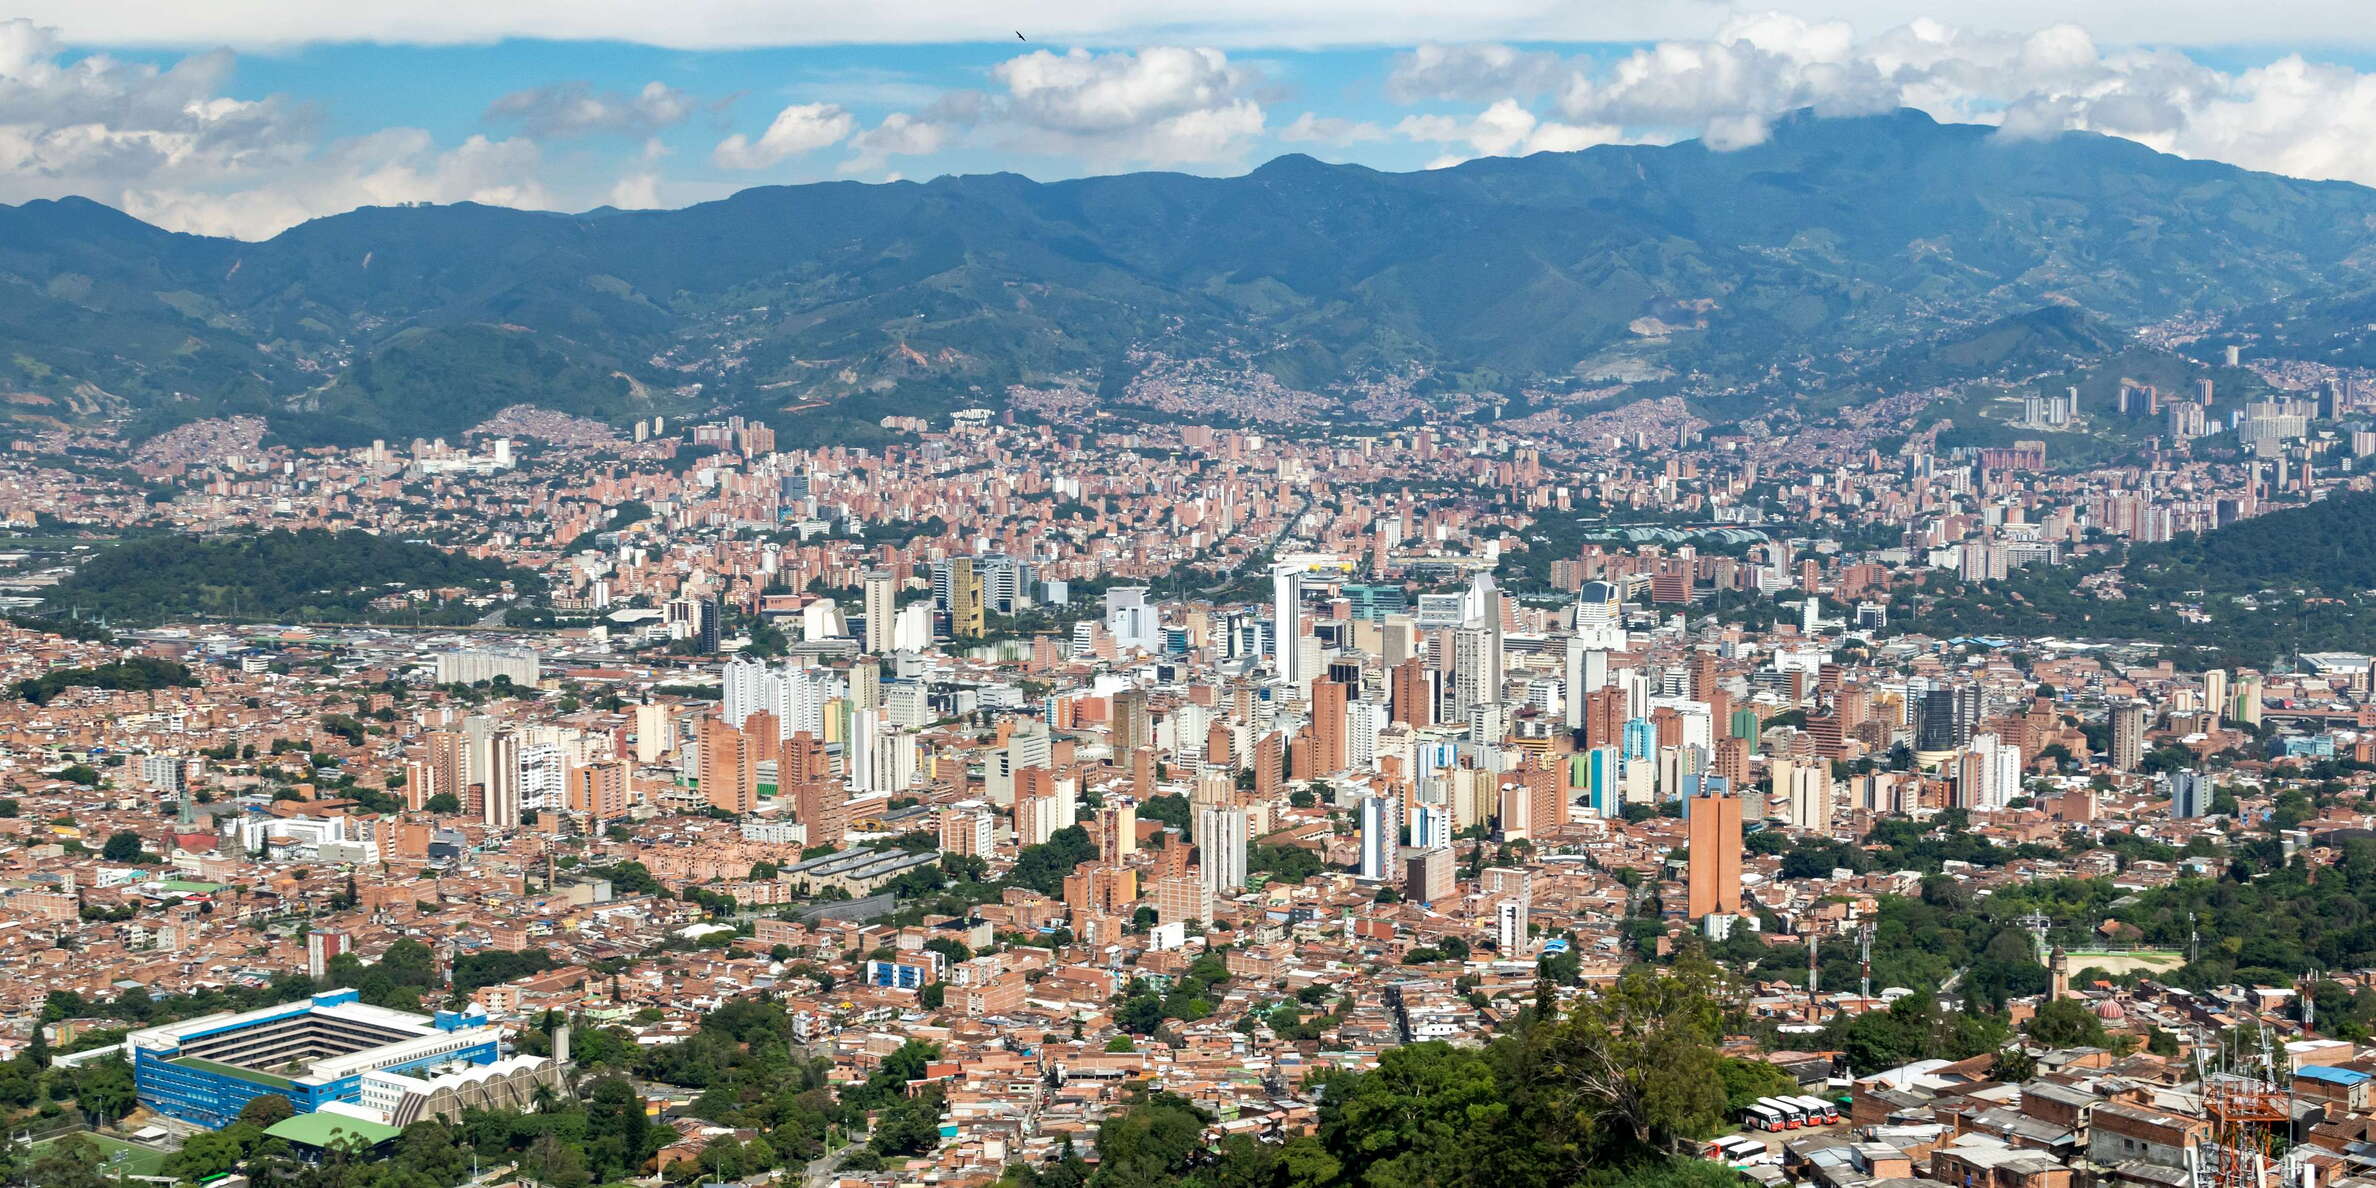 Medellín with La Candelaria